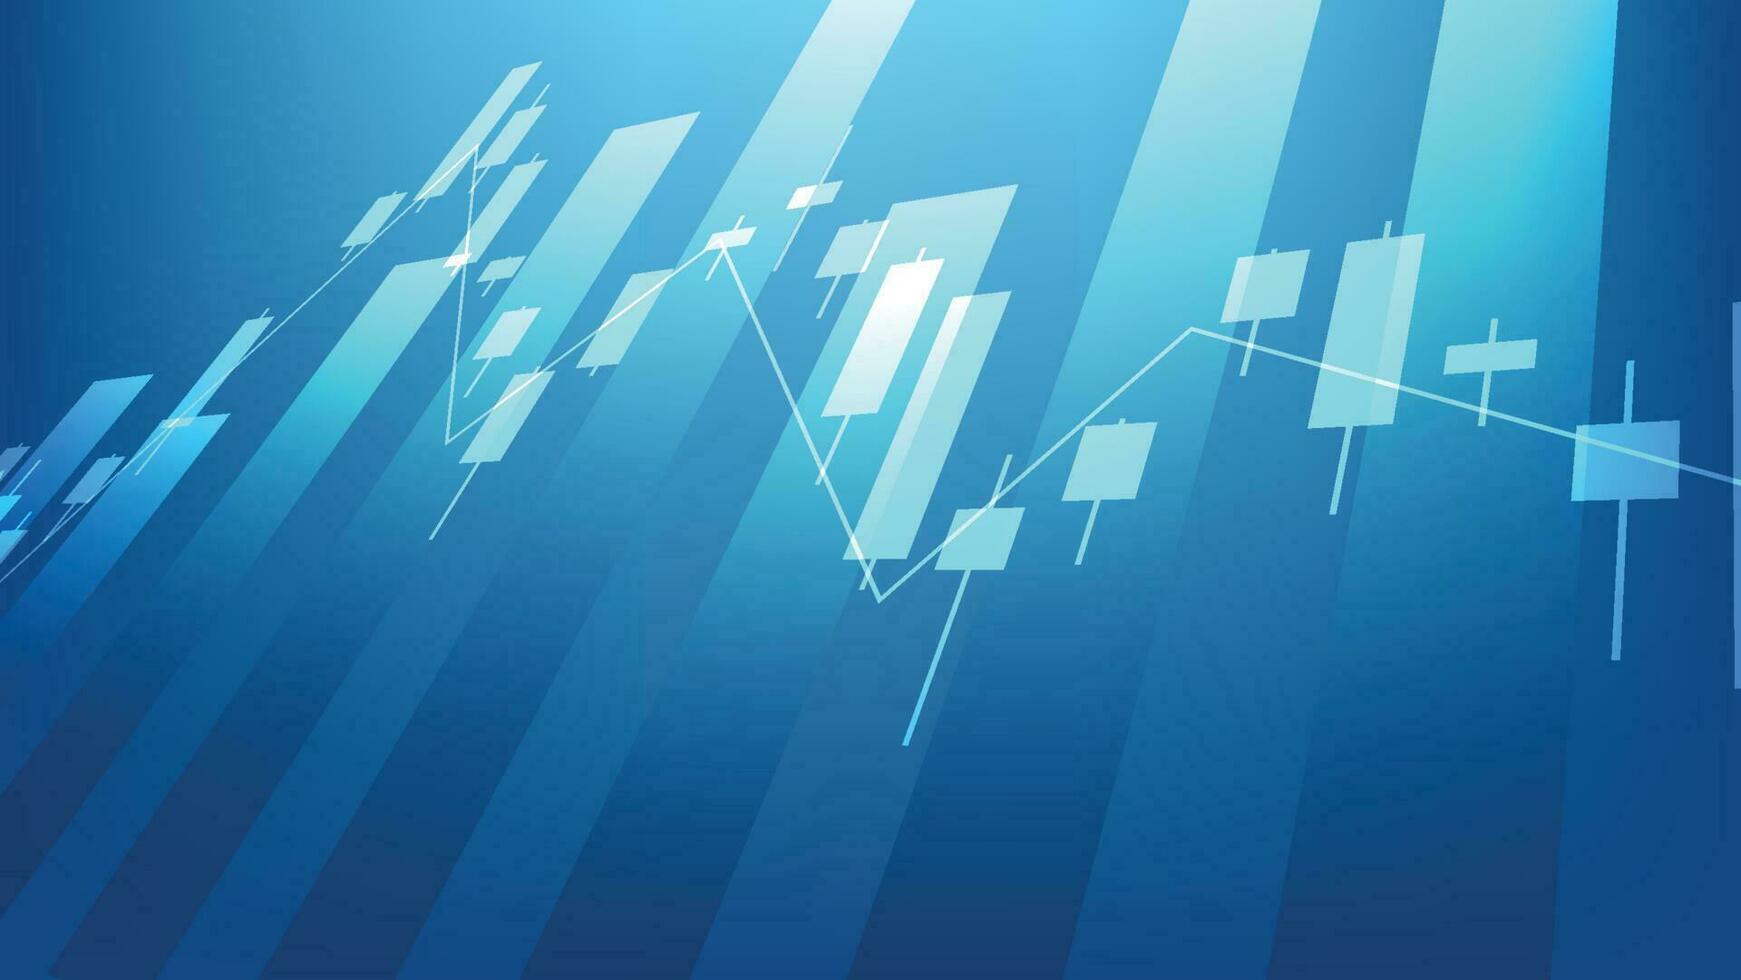 conceito de situação de economia. estatísticas de negócios financeiros com gráfico de barras e gráfico de velas mostram o preço do mercado de ações e câmbio em fundo azul vetor